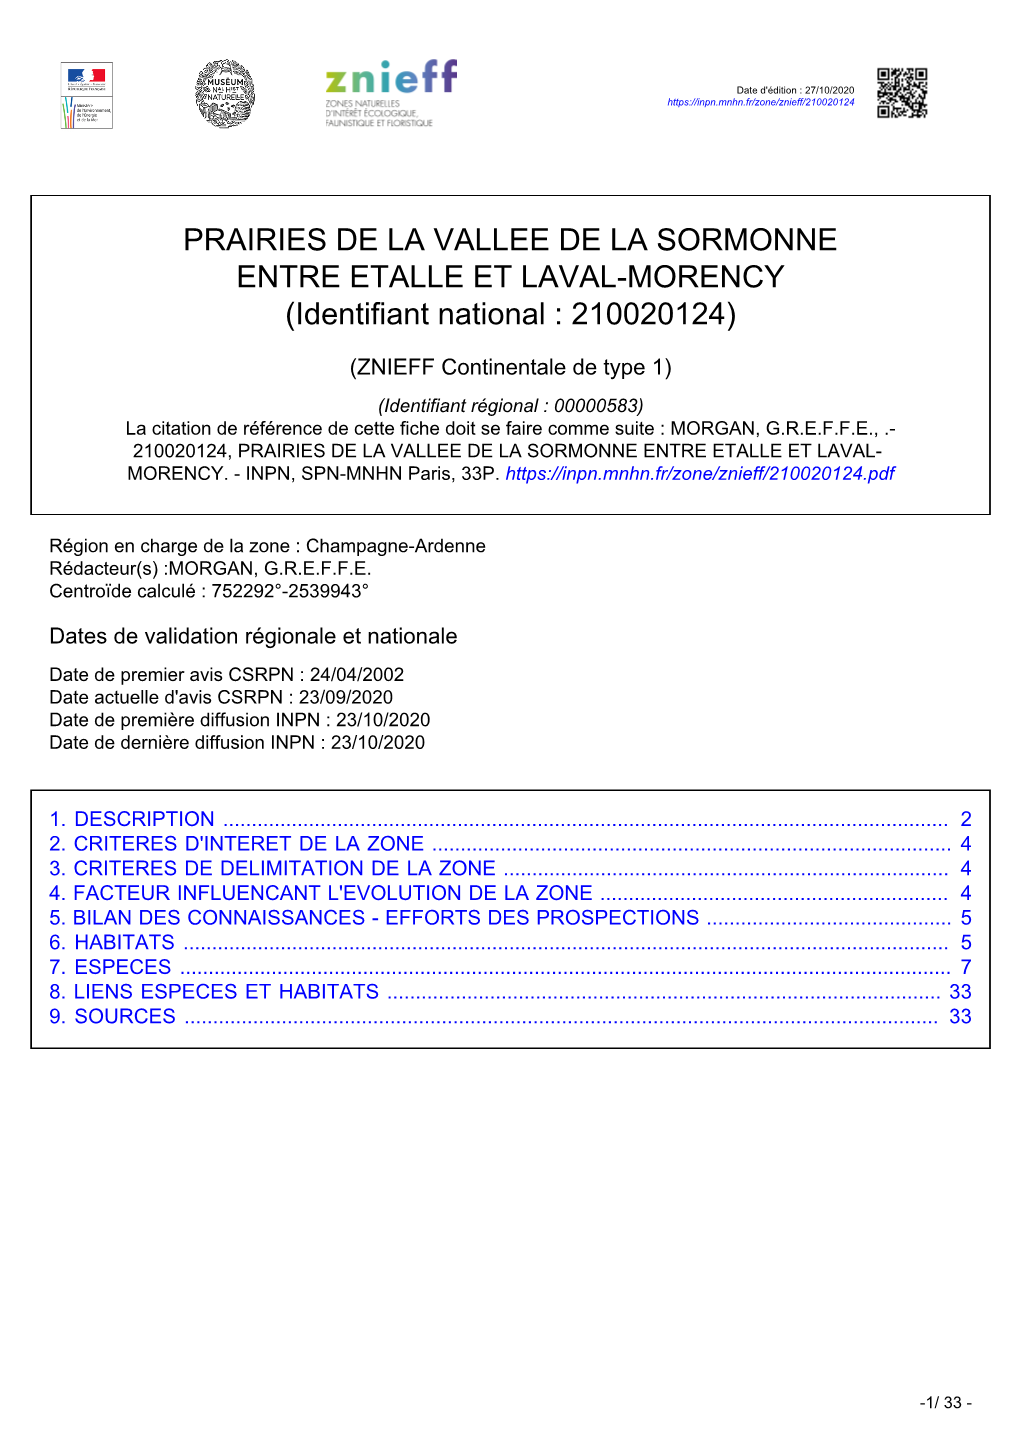 PRAIRIES DE LA VALLEE DE LA SORMONNE ENTRE ETALLE ET LAVAL-MORENCY (Identifiant National : 210020124)